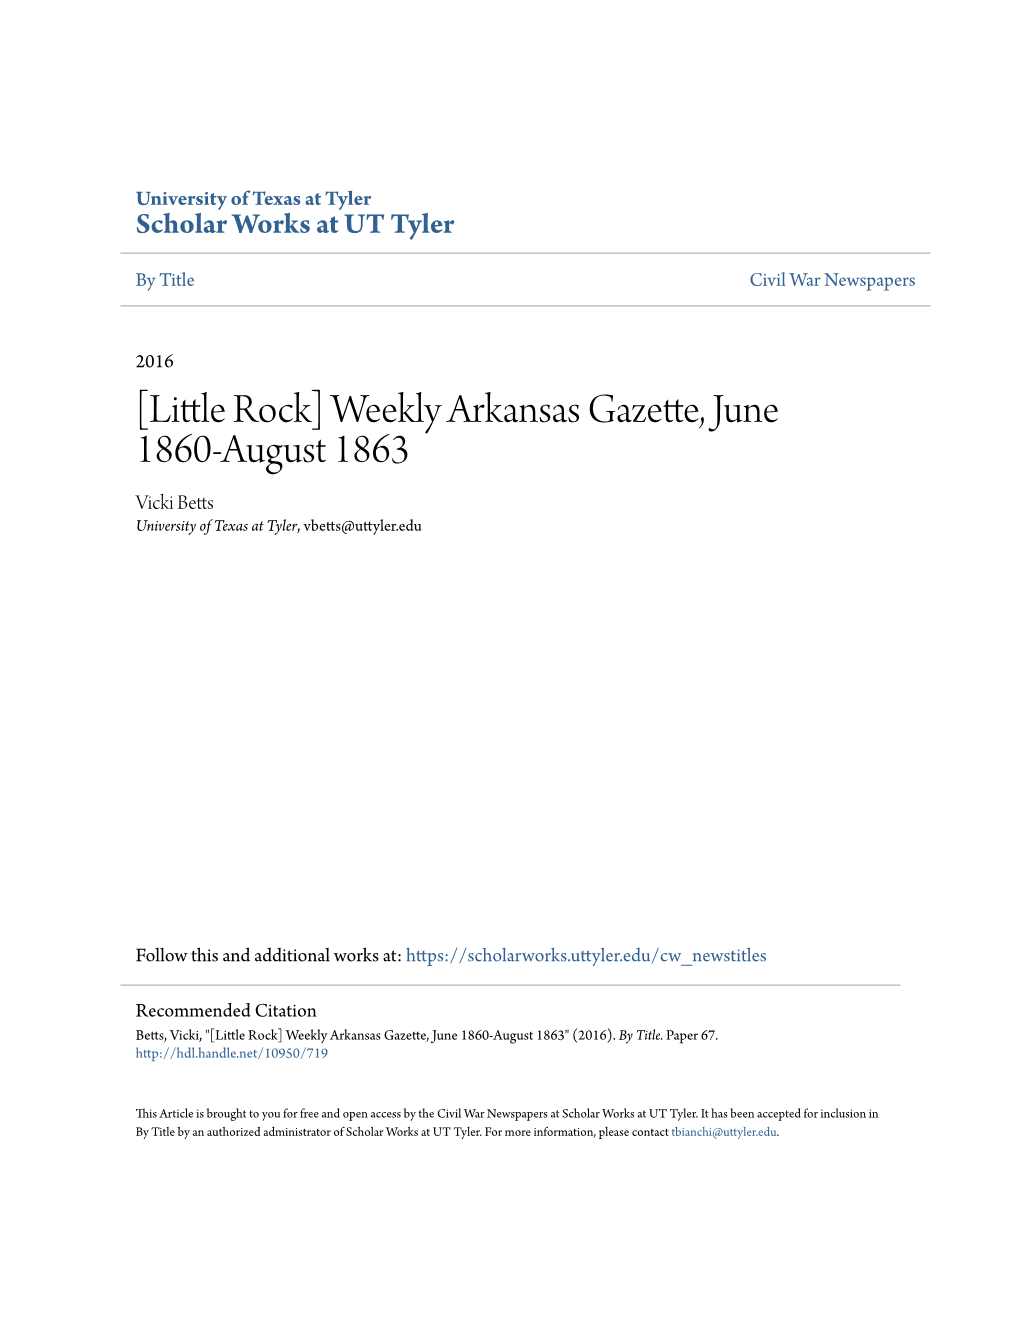 [Little Rock] Weekly Arkansas Gazette, June 1860-August 1863 Vicki Betts University of Texas at Tyler, Vbetts@Uttyler.Edu